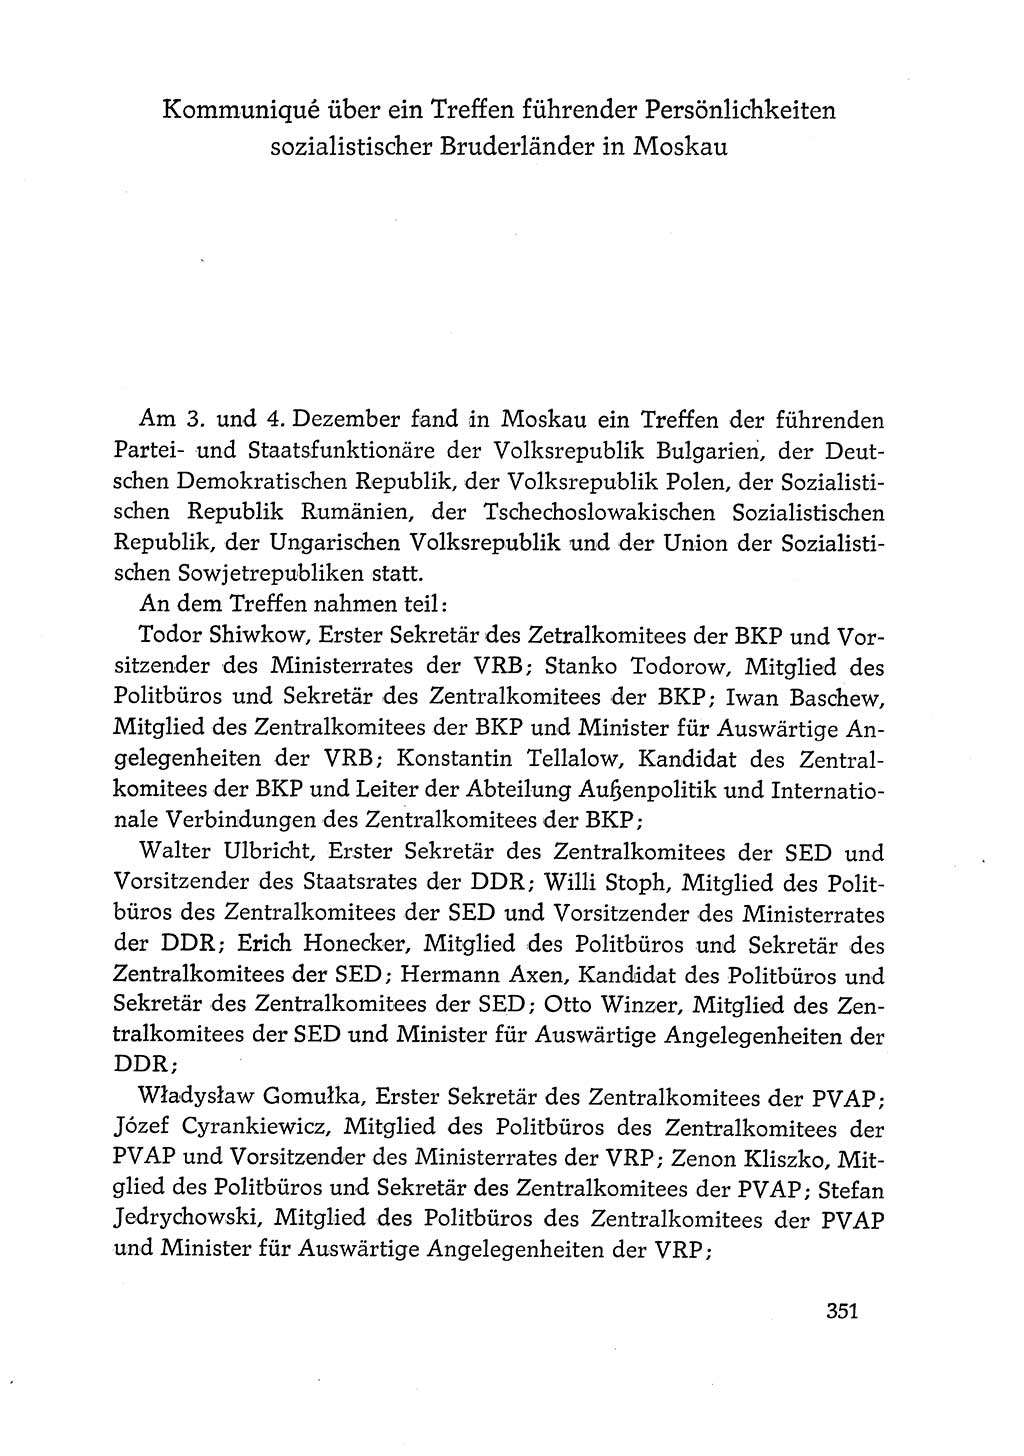 Dokumente der Sozialistischen Einheitspartei Deutschlands (SED) [Deutsche Demokratische Republik (DDR)] 1968-1969, Seite 351 (Dok. SED DDR 1968-1969, S. 351)